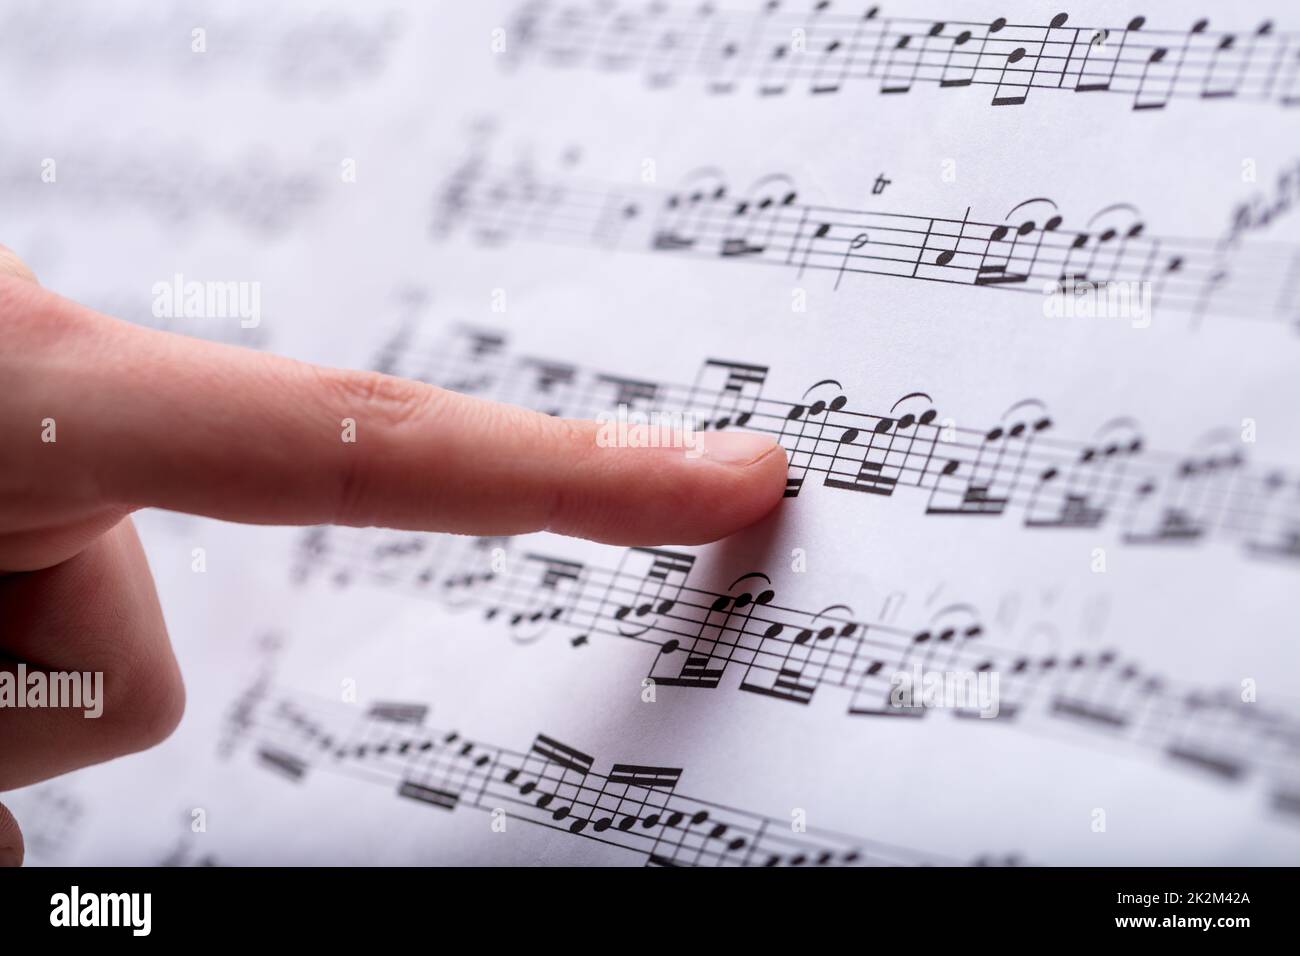 Notizen zu einem Musical, das mit dem Finger entdeckt wurde Stockfoto